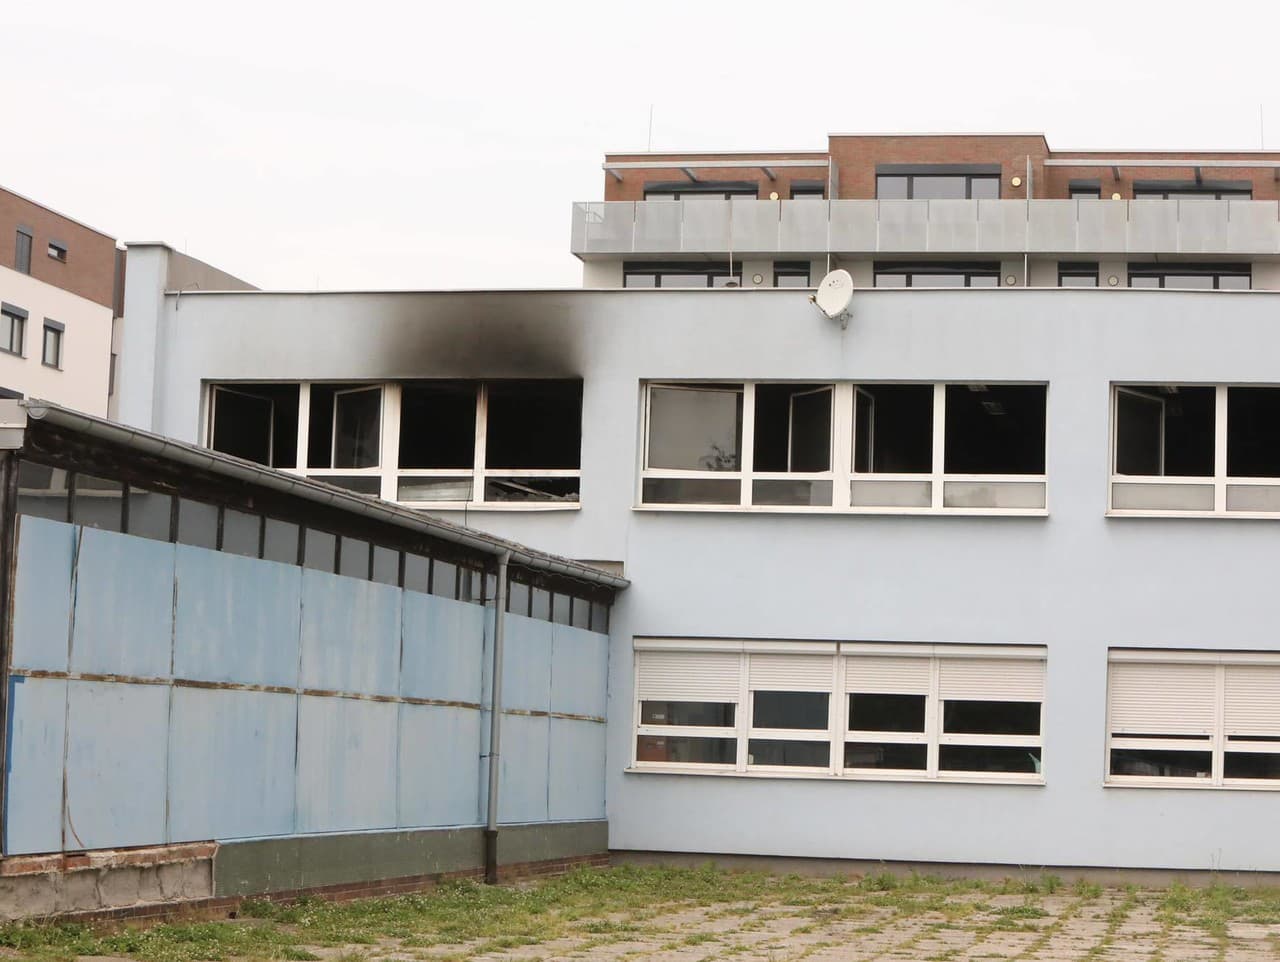 V bratislavskom gymnáziu na Teplickej ulici vypukol požiar